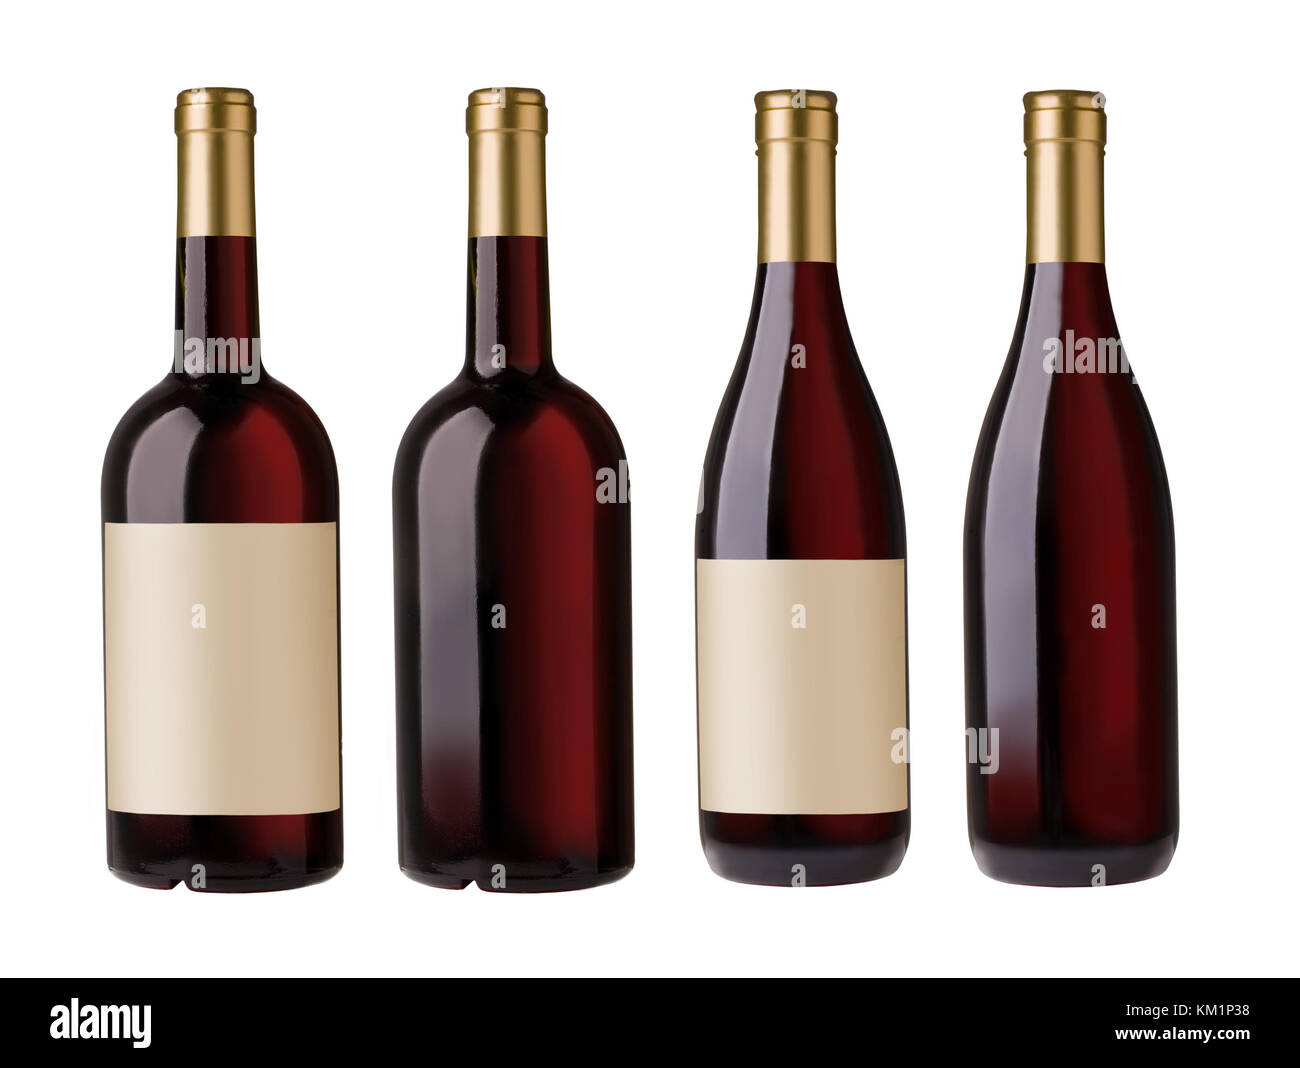 Fusione di due immagini di bottiglie di vino rosso con etichette vuote e senza etichetta, Foto Stock